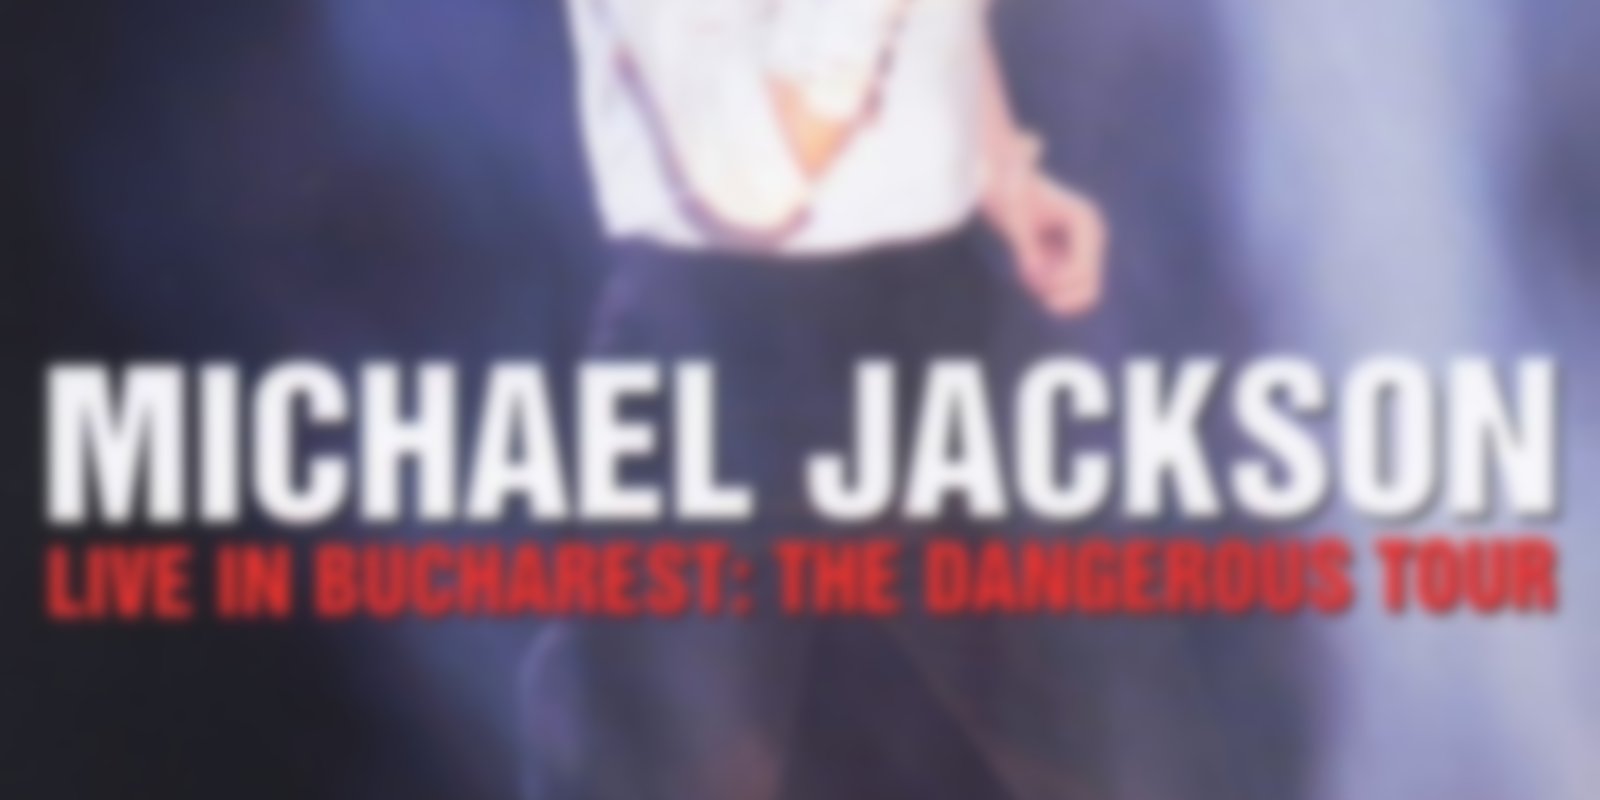 Michael Jackson - The Dangerous Tour